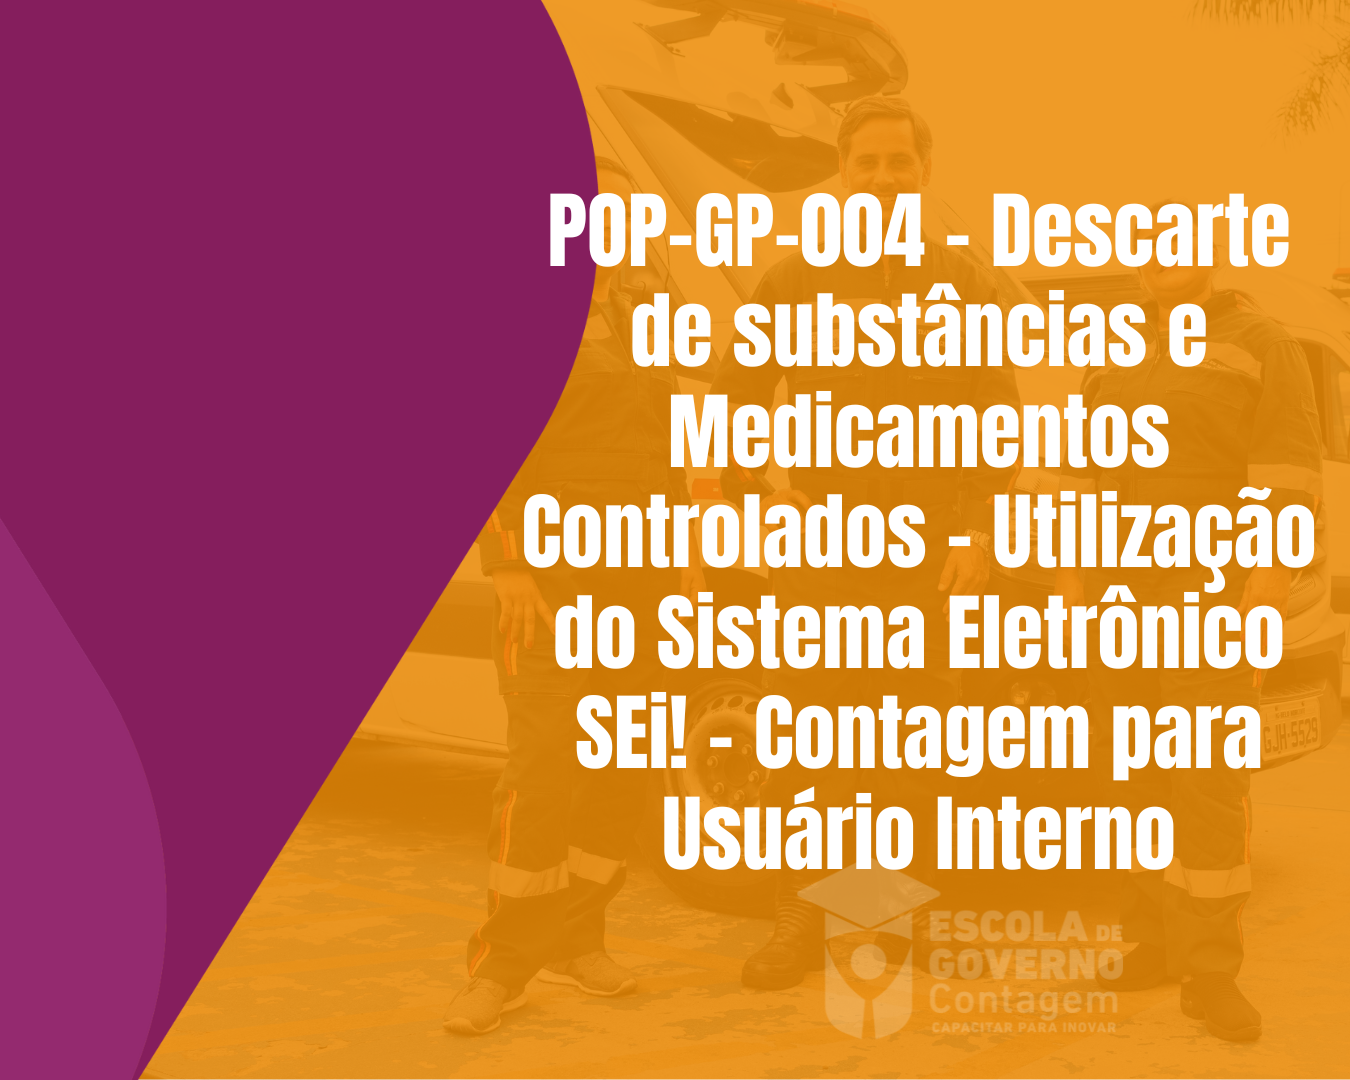 POP-GP-004 - Descarte de substâncias e Medicamentos Controlados - Utilização do Sistema Eletrônico SEi! - Contagem para Usuário Interno